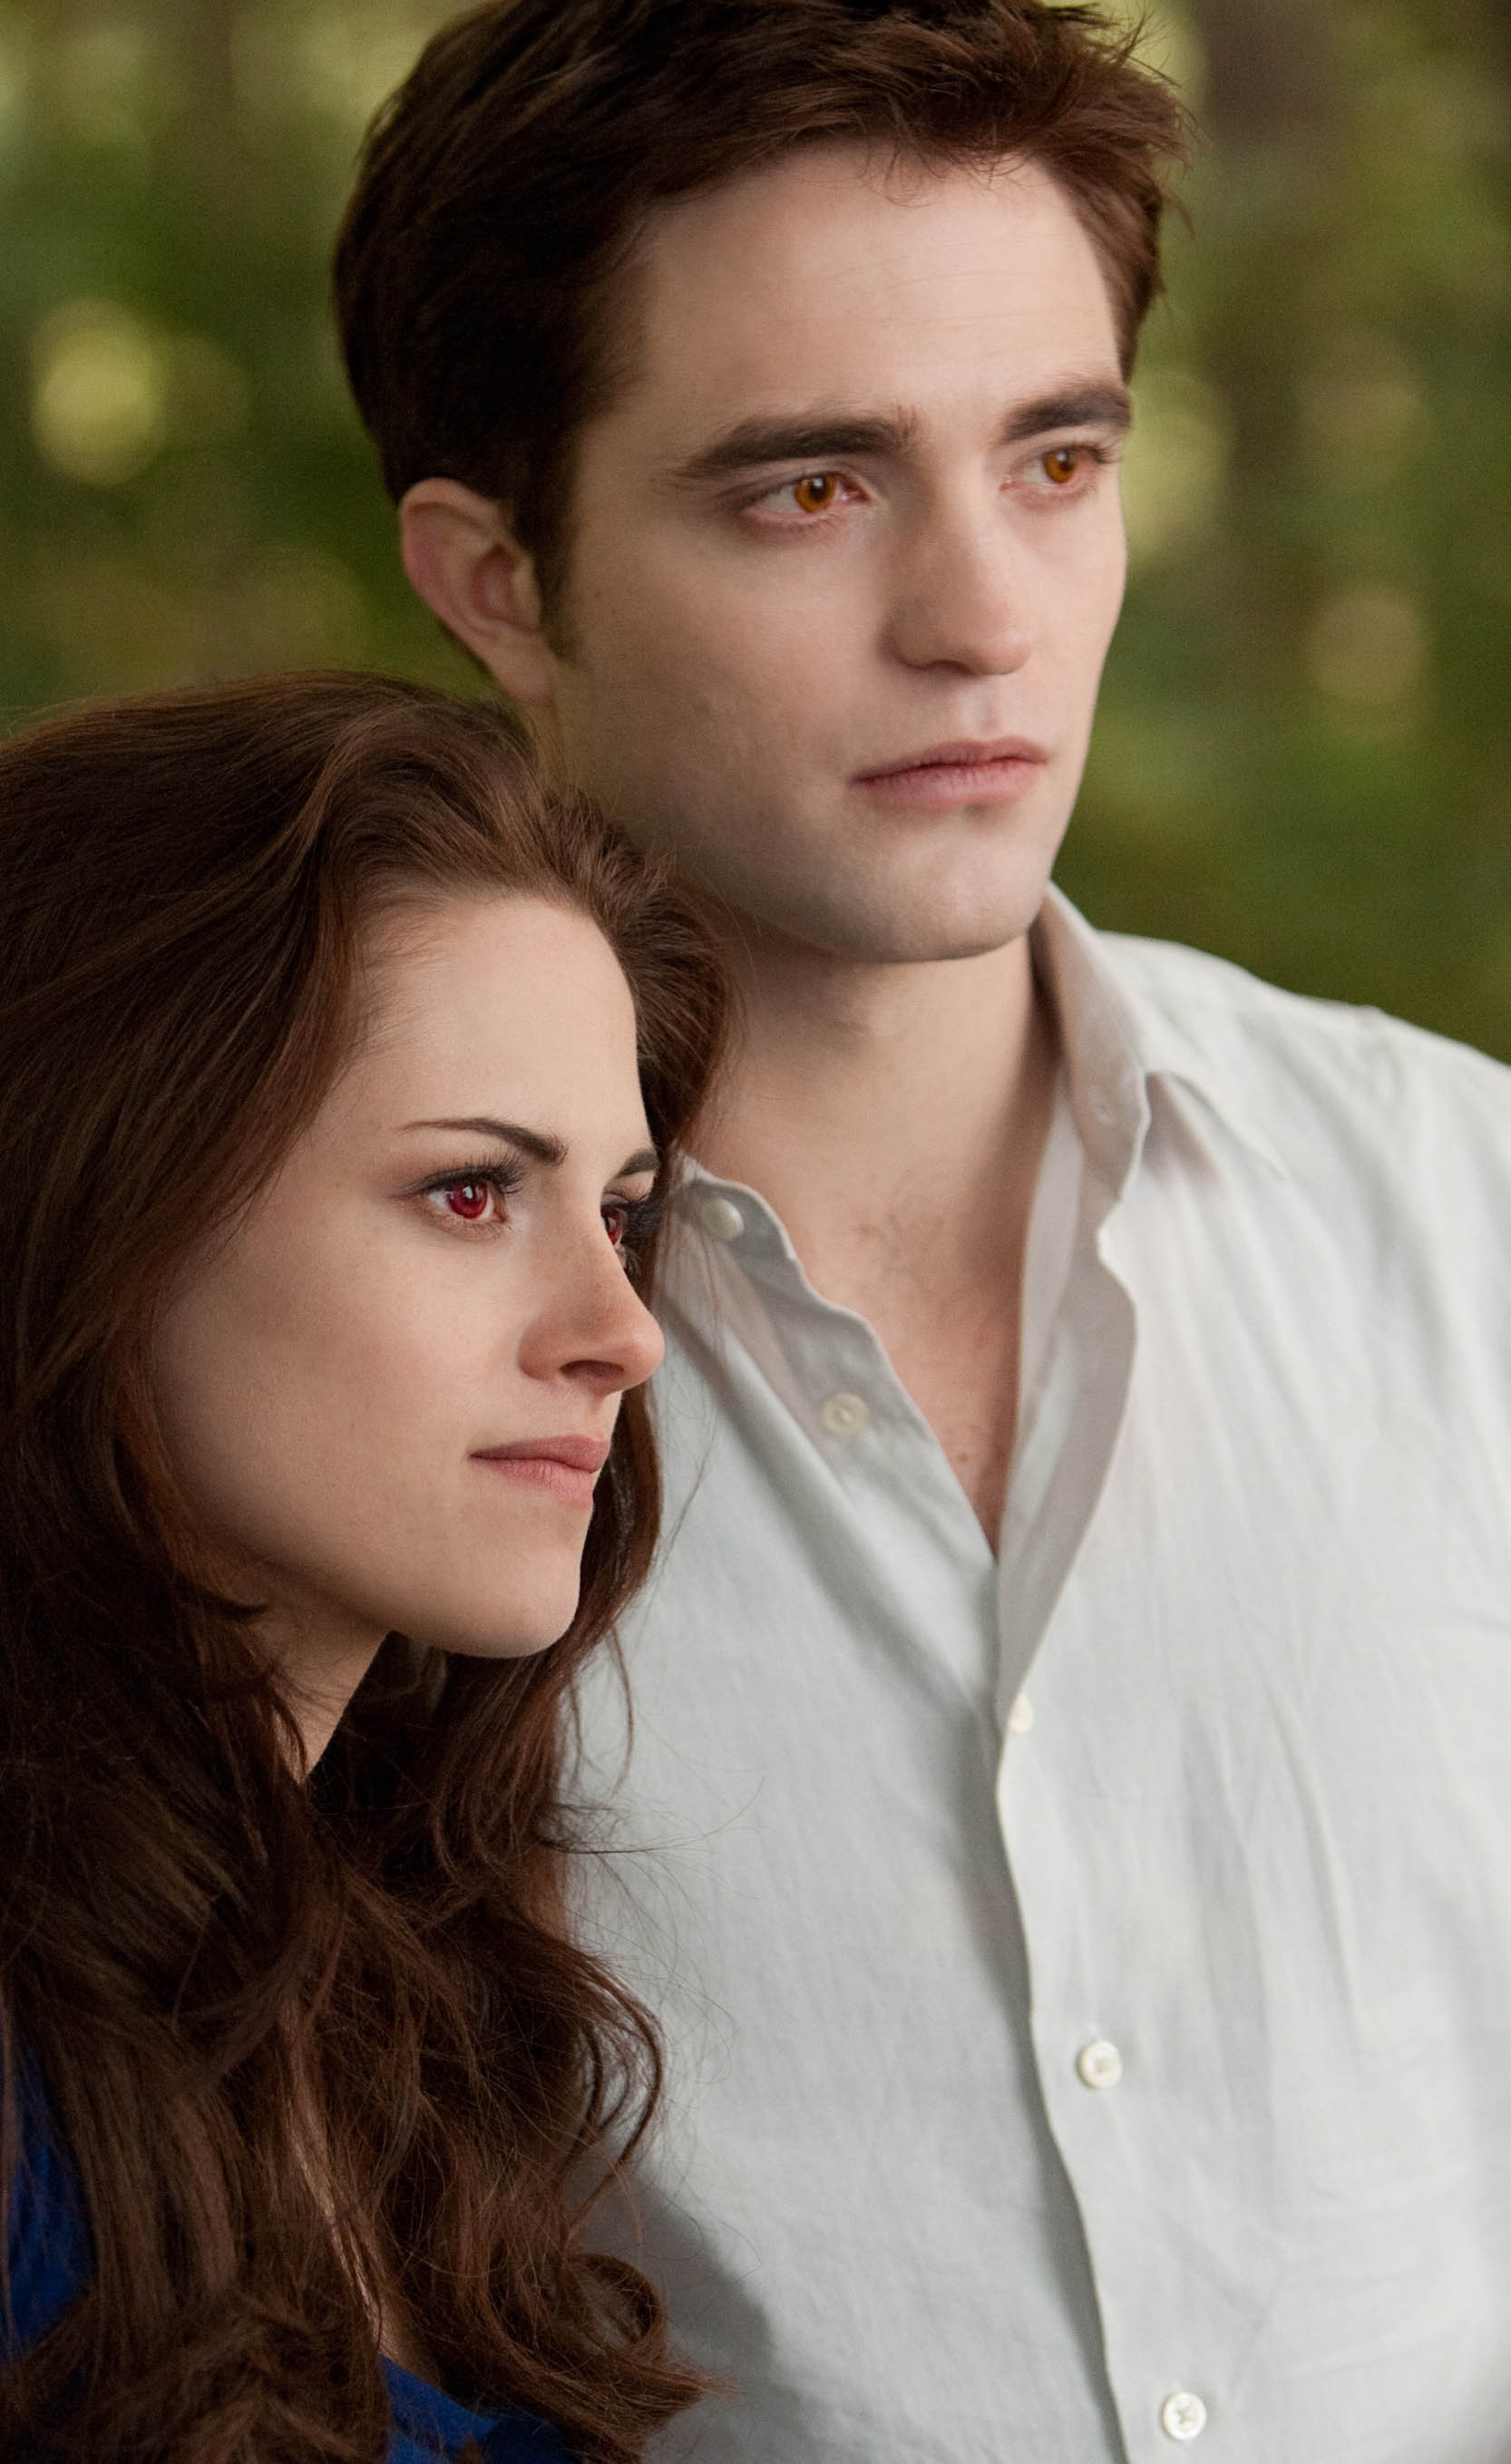 Kristen och Pattinson spelar även ett kärlekspar i filmerna 